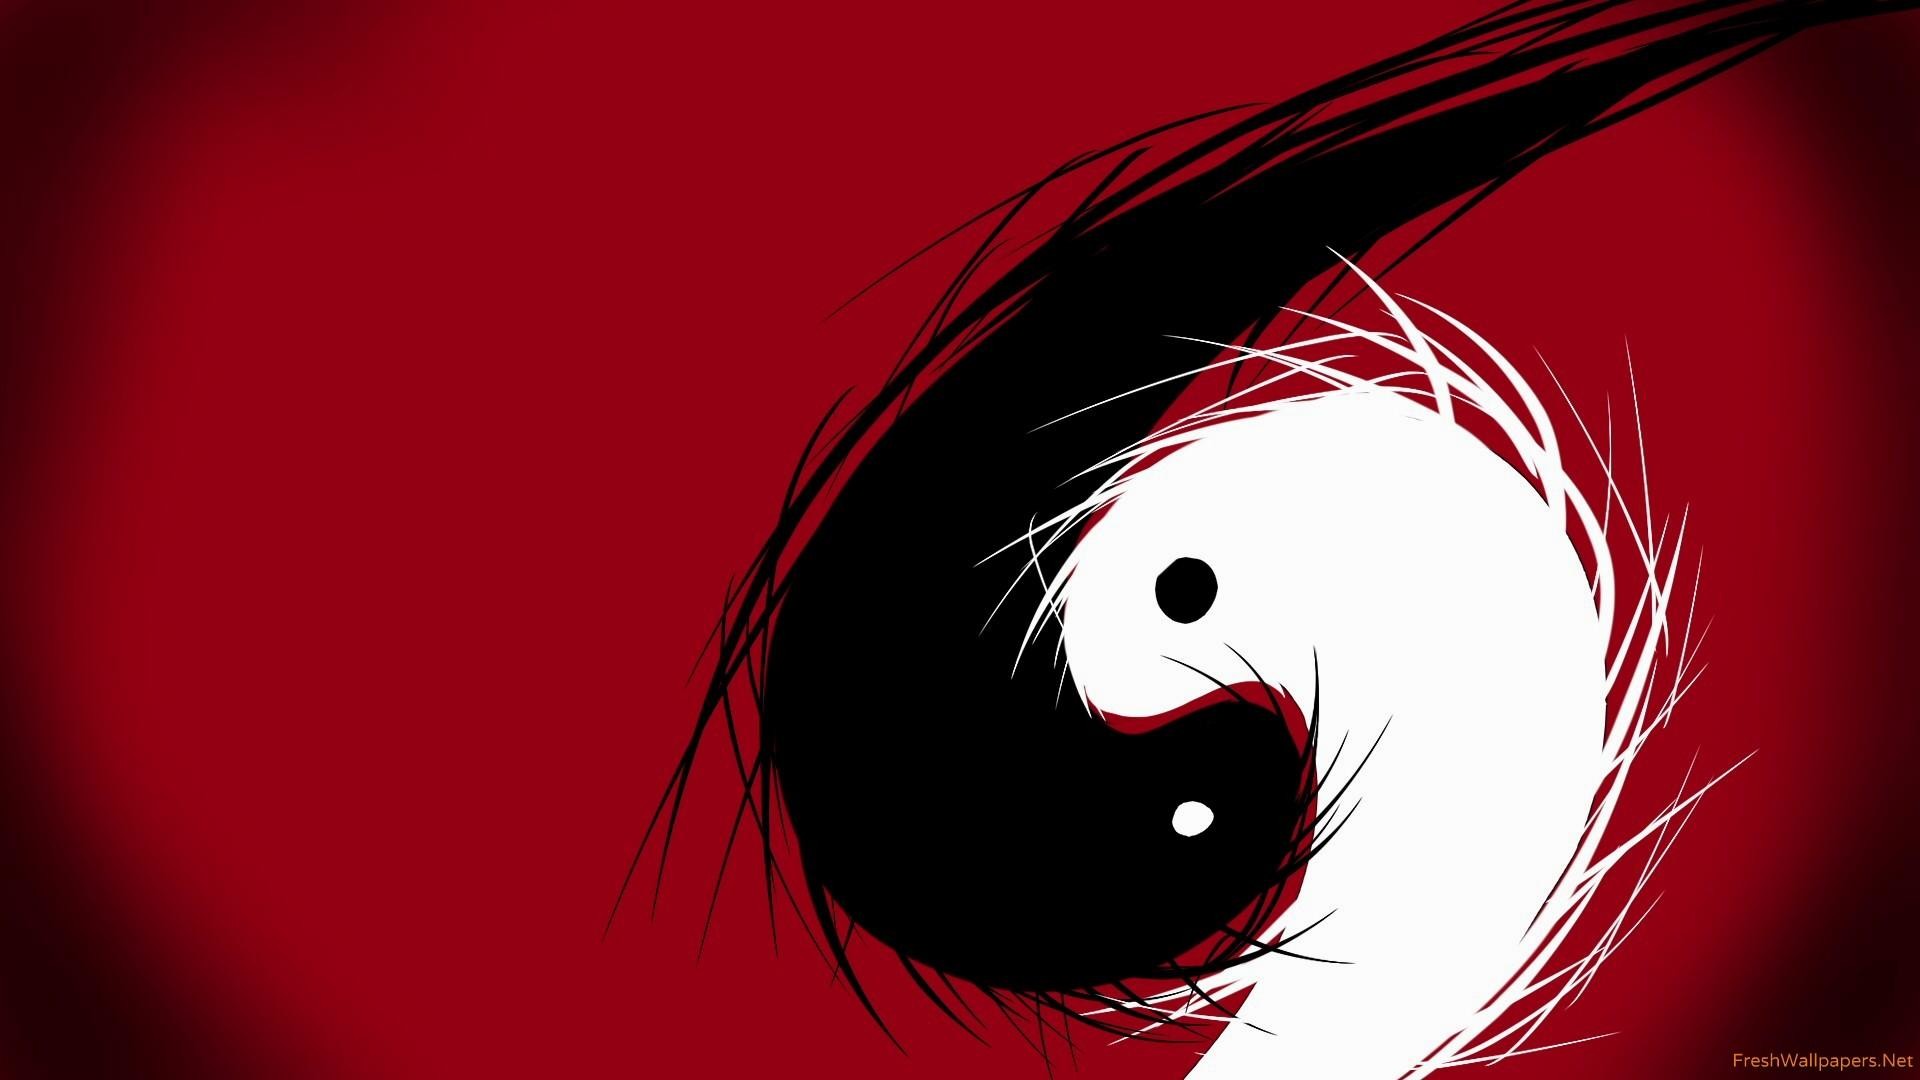 tapete ying yang,rot,gesicht,schwarz,auge,karikatur